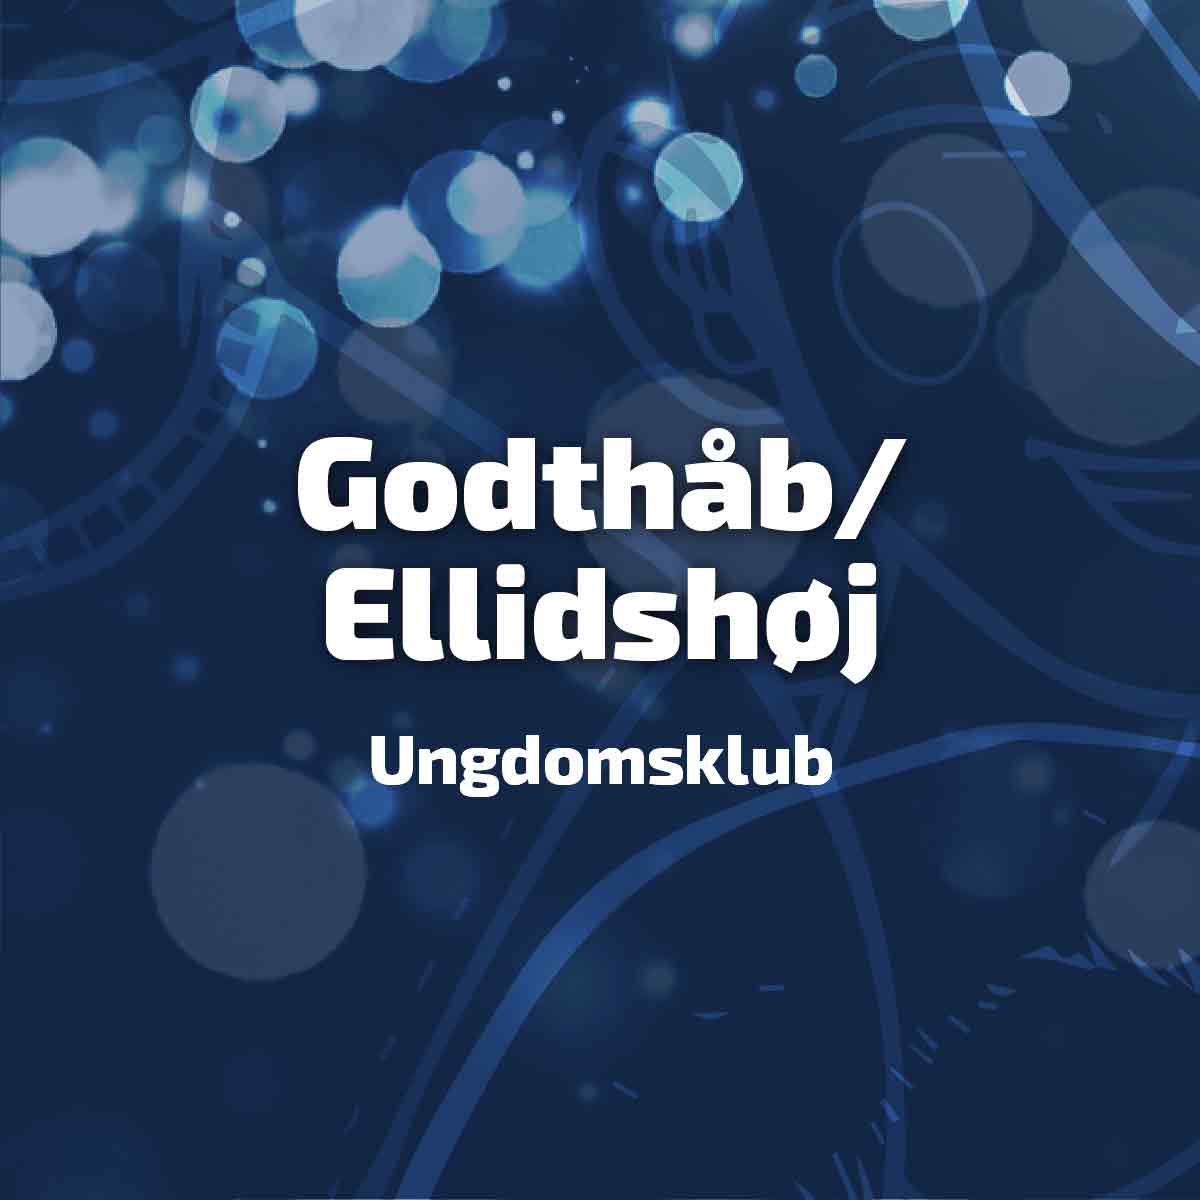 Godthåb/Ellidshøj Ungdomsklub